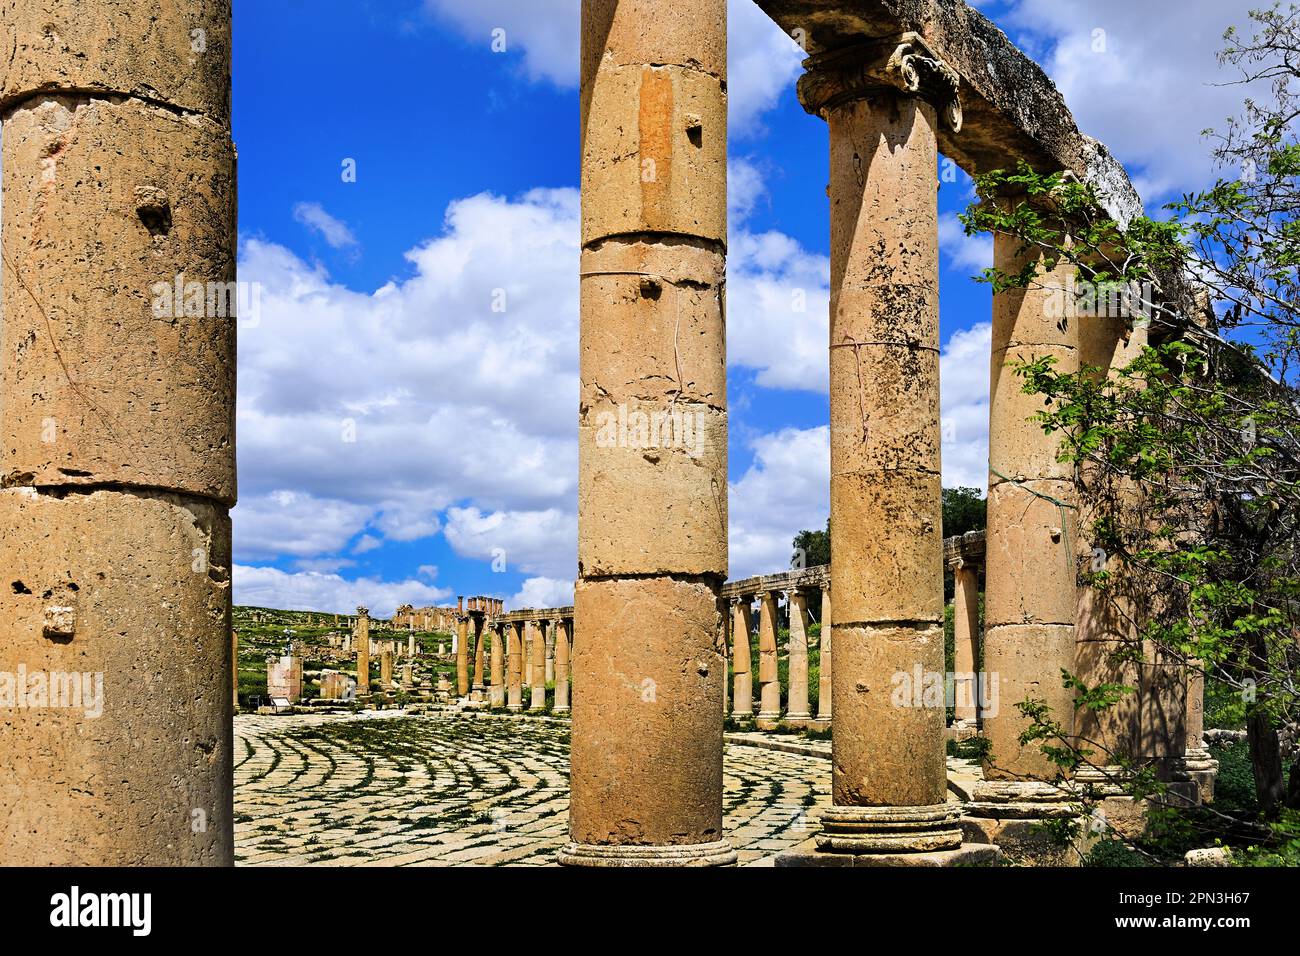 Piazza ovale presso le rovine romane, Jerash, Giordania, antica città, vanta una catena ininterrotta di occupazione umana risalente a 6.500 anni fa, Foto Stock